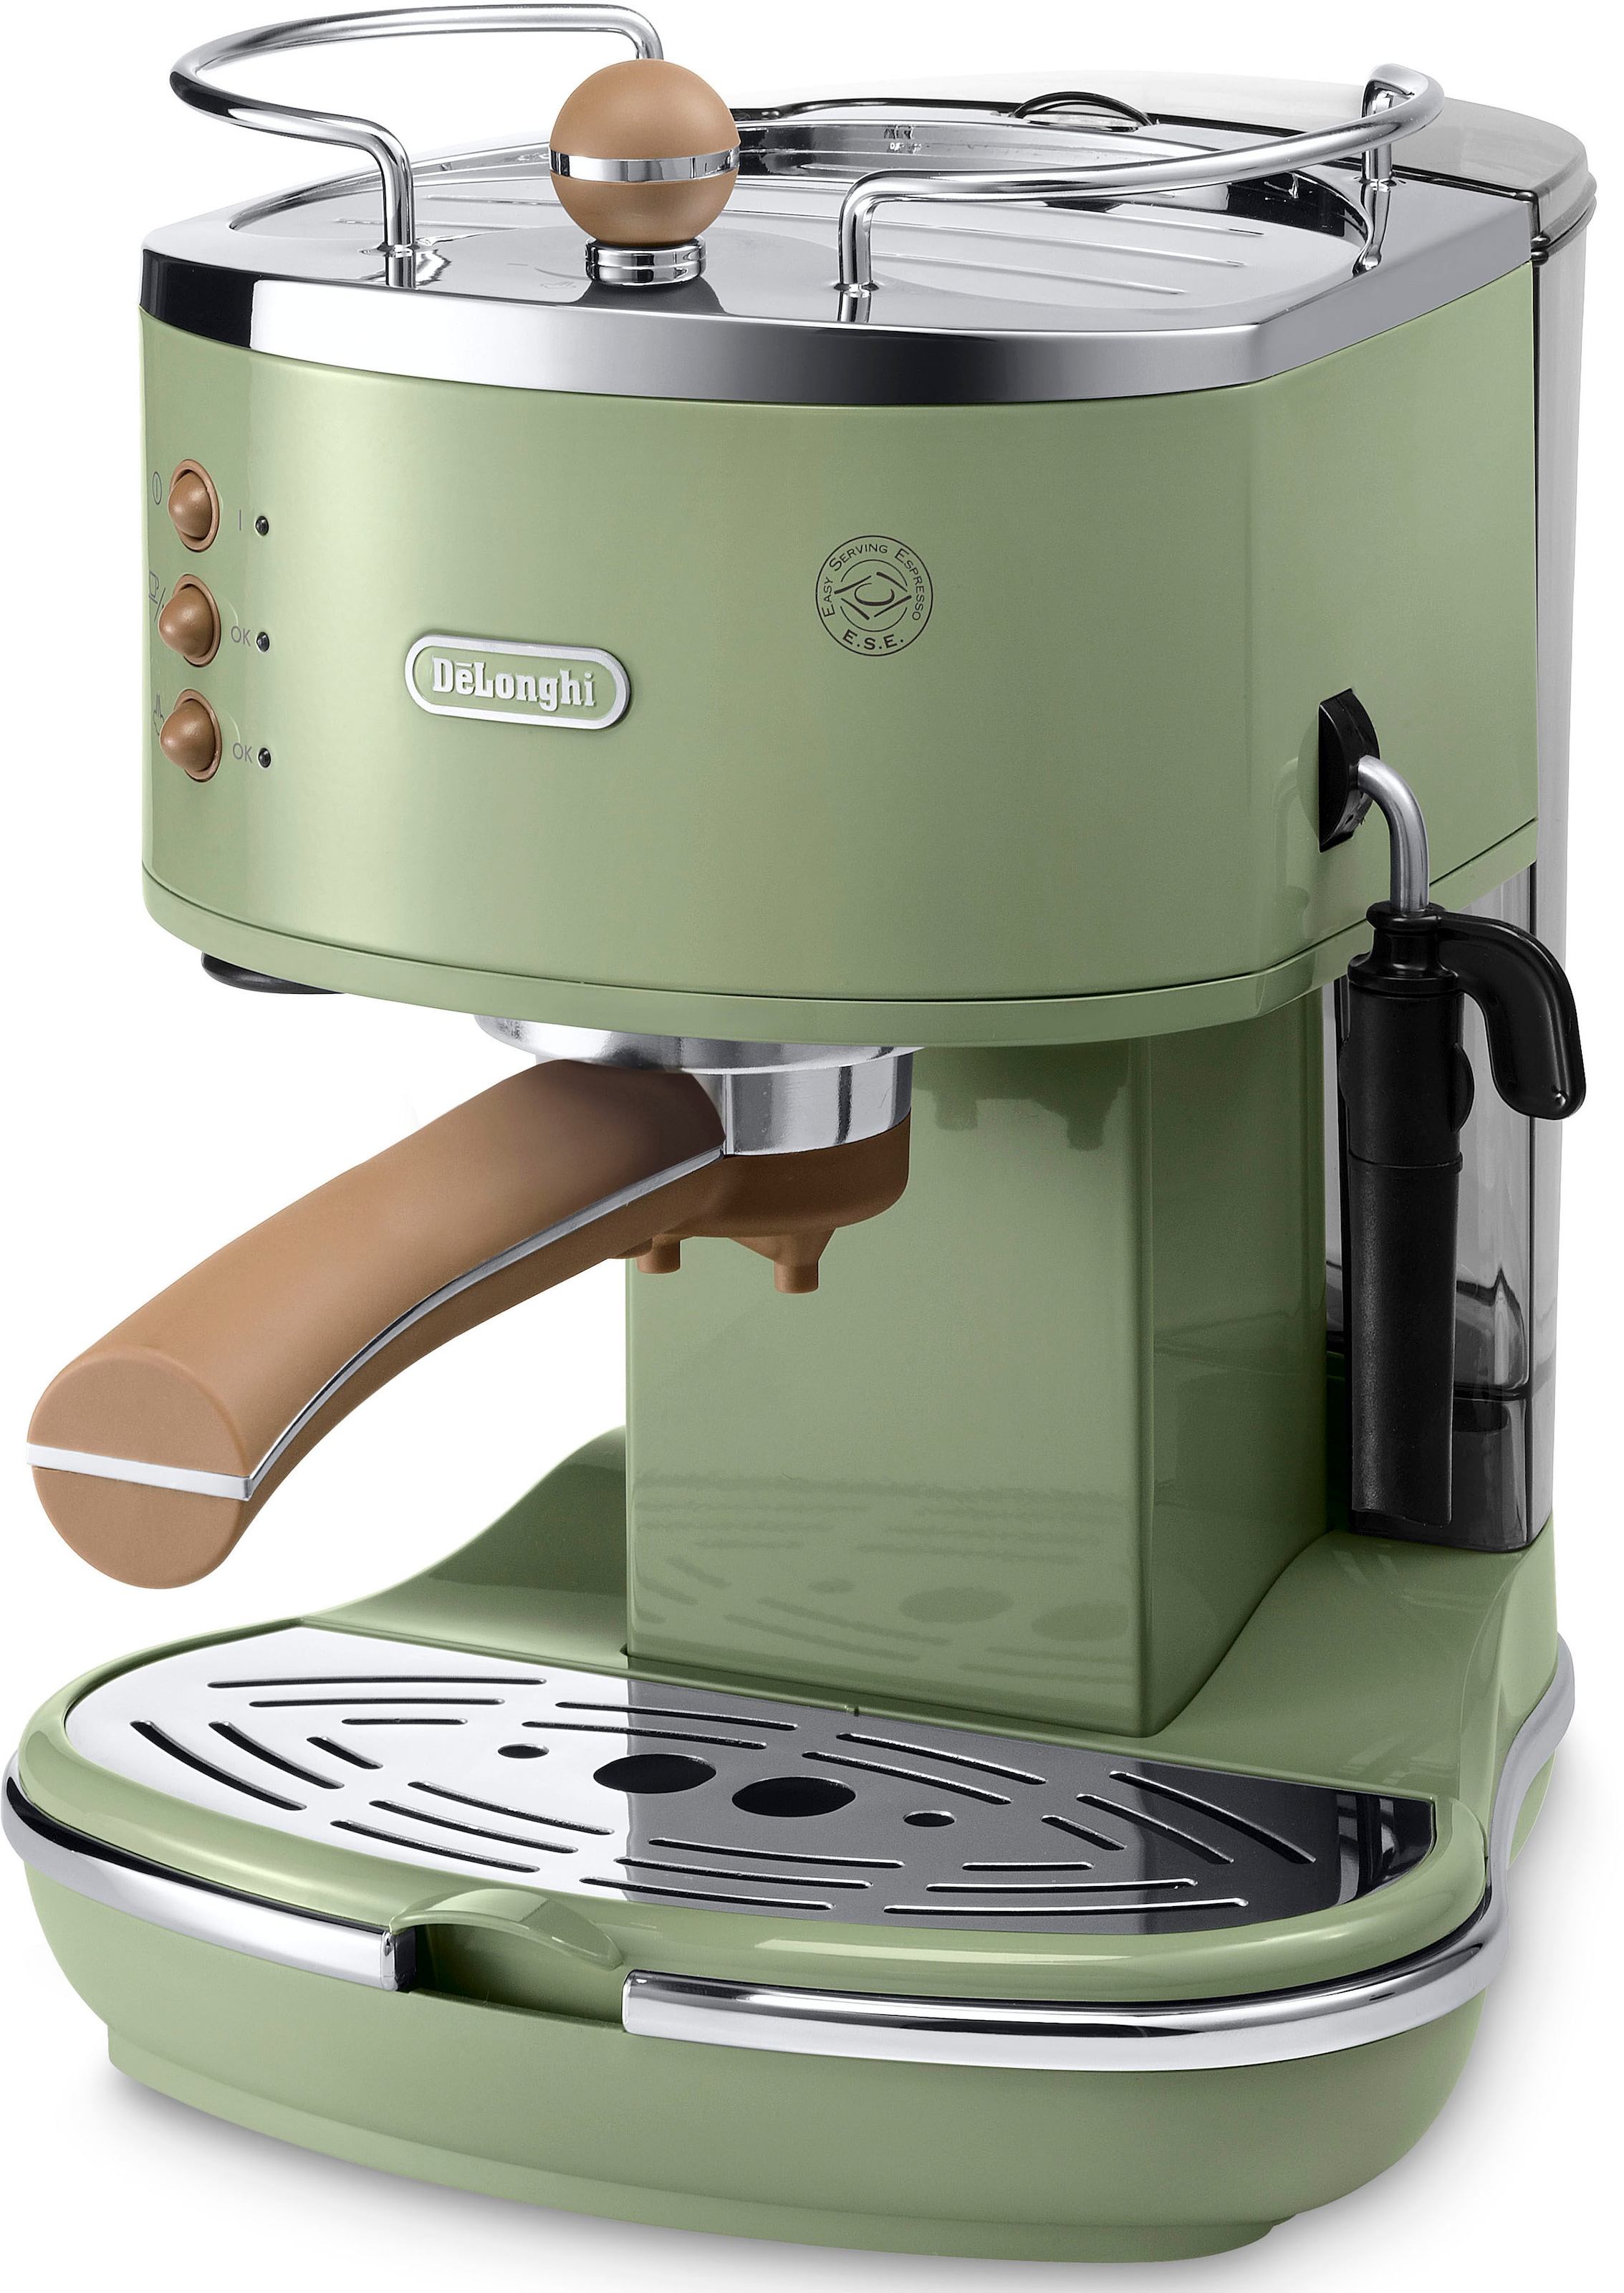 De'Longhi Espressomaschine »Icona Vintage ECOV 311.GR«, Siebträger, auch für Kaffeepads geeignet